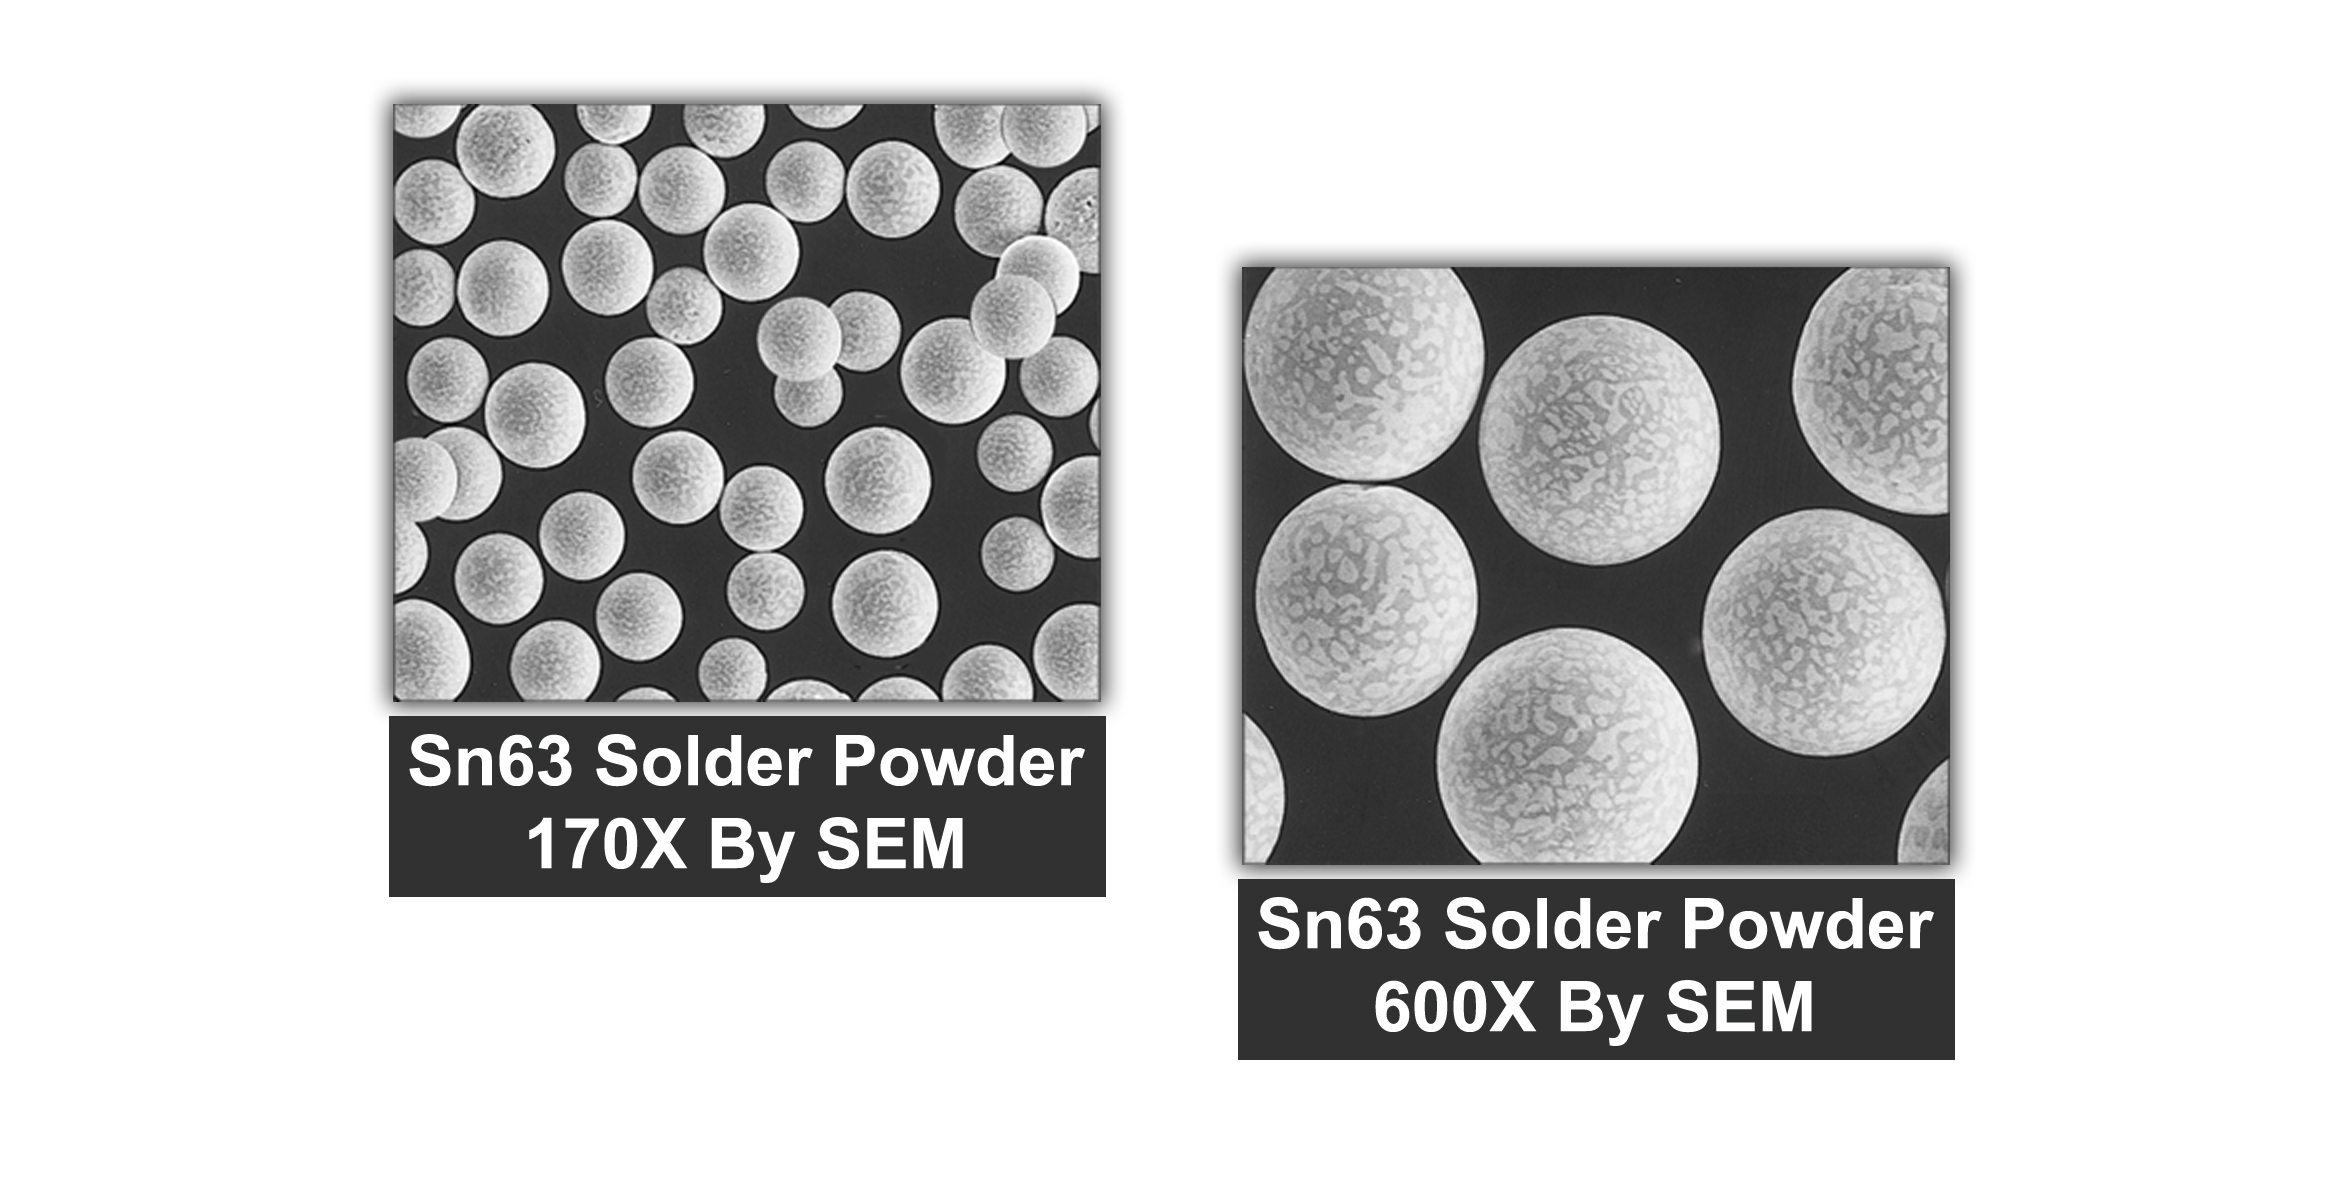 Spherical Metal Powder Properties